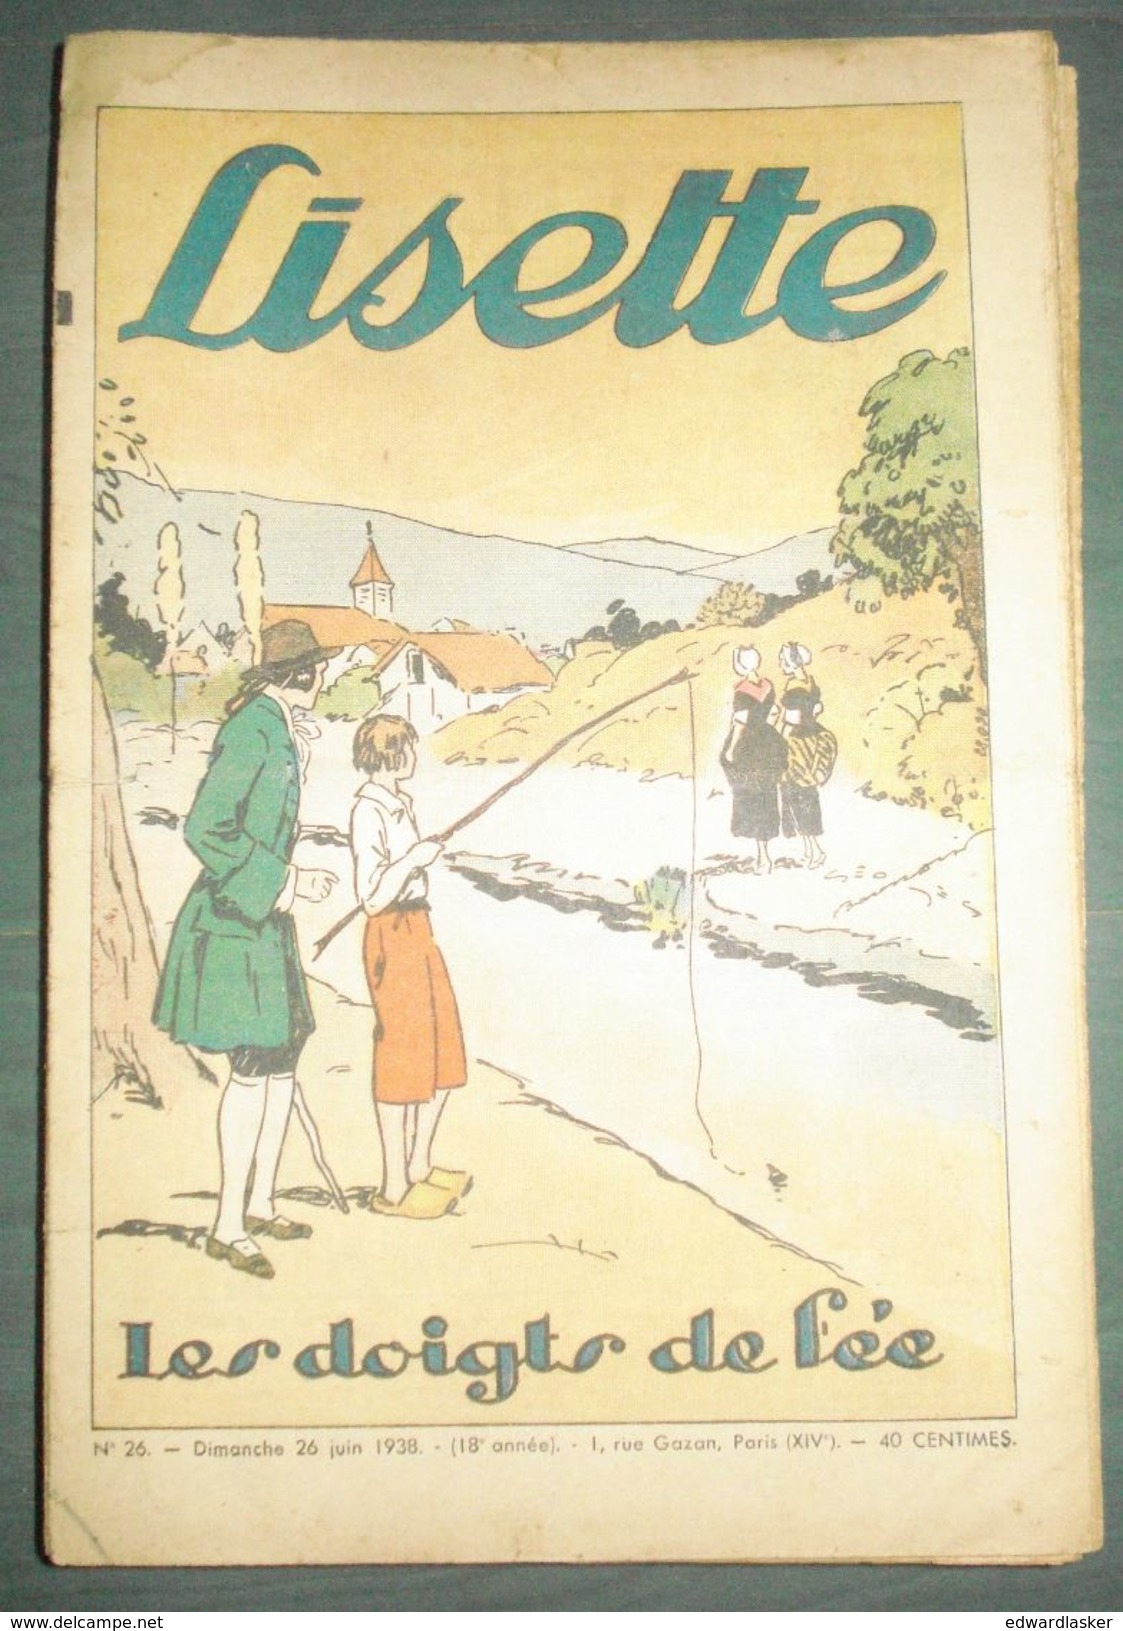 Lot de LISETTE - 49 N° des années 1938 à 1940 - Le RALLIC, etc